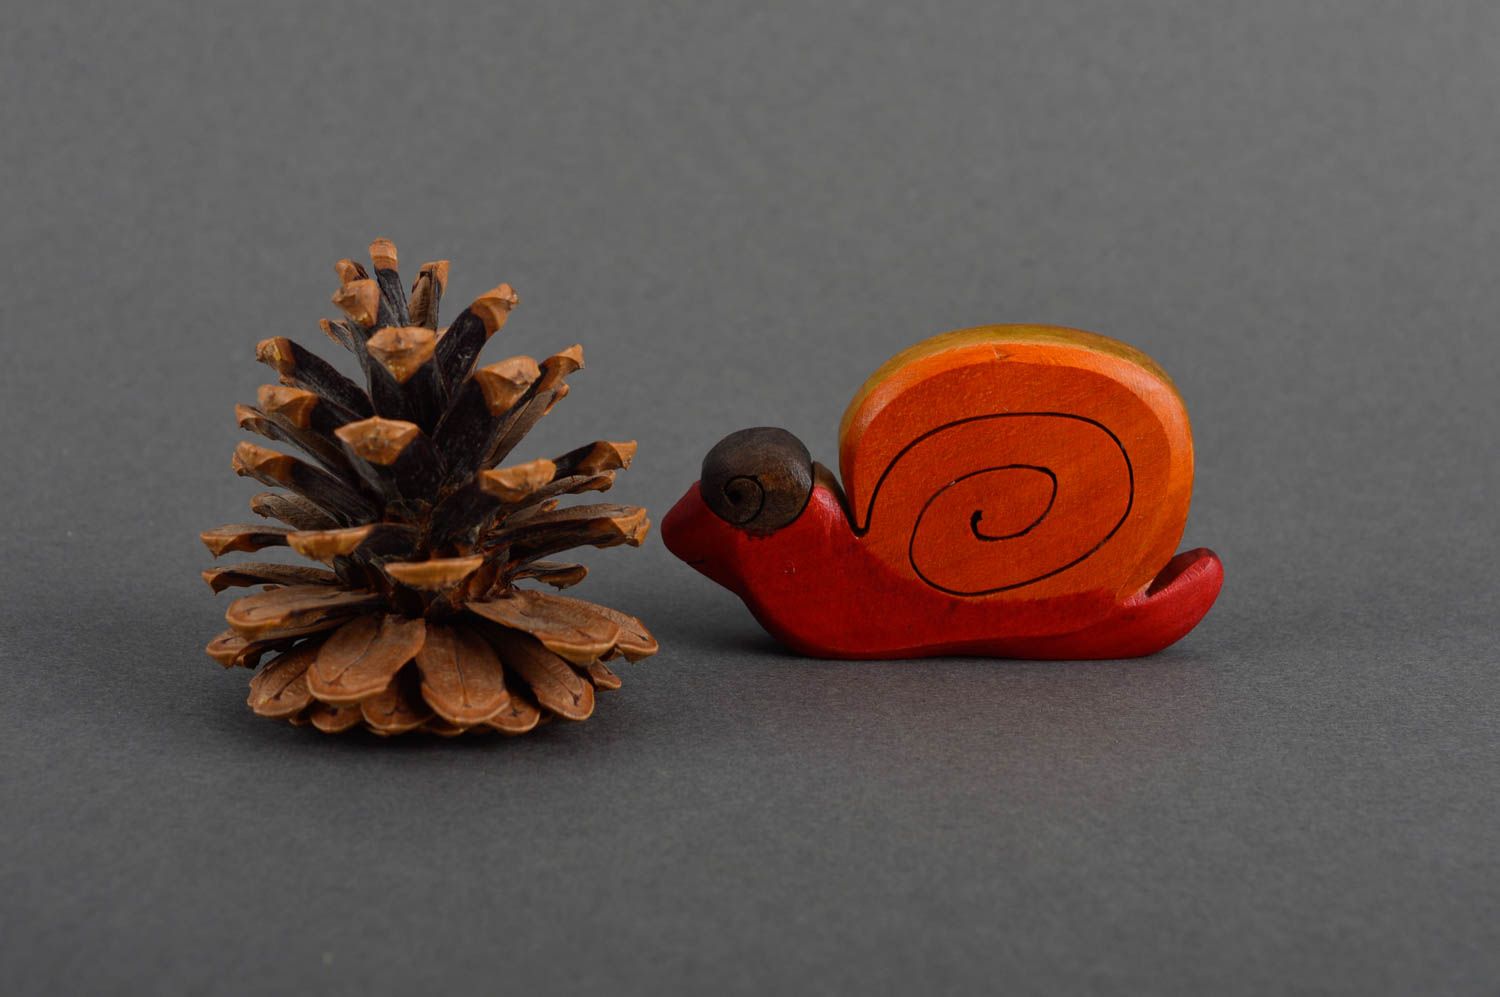 Игрушка ручной работы фигурка из дерева игрушка из натуральных материалов Улитка фото 1